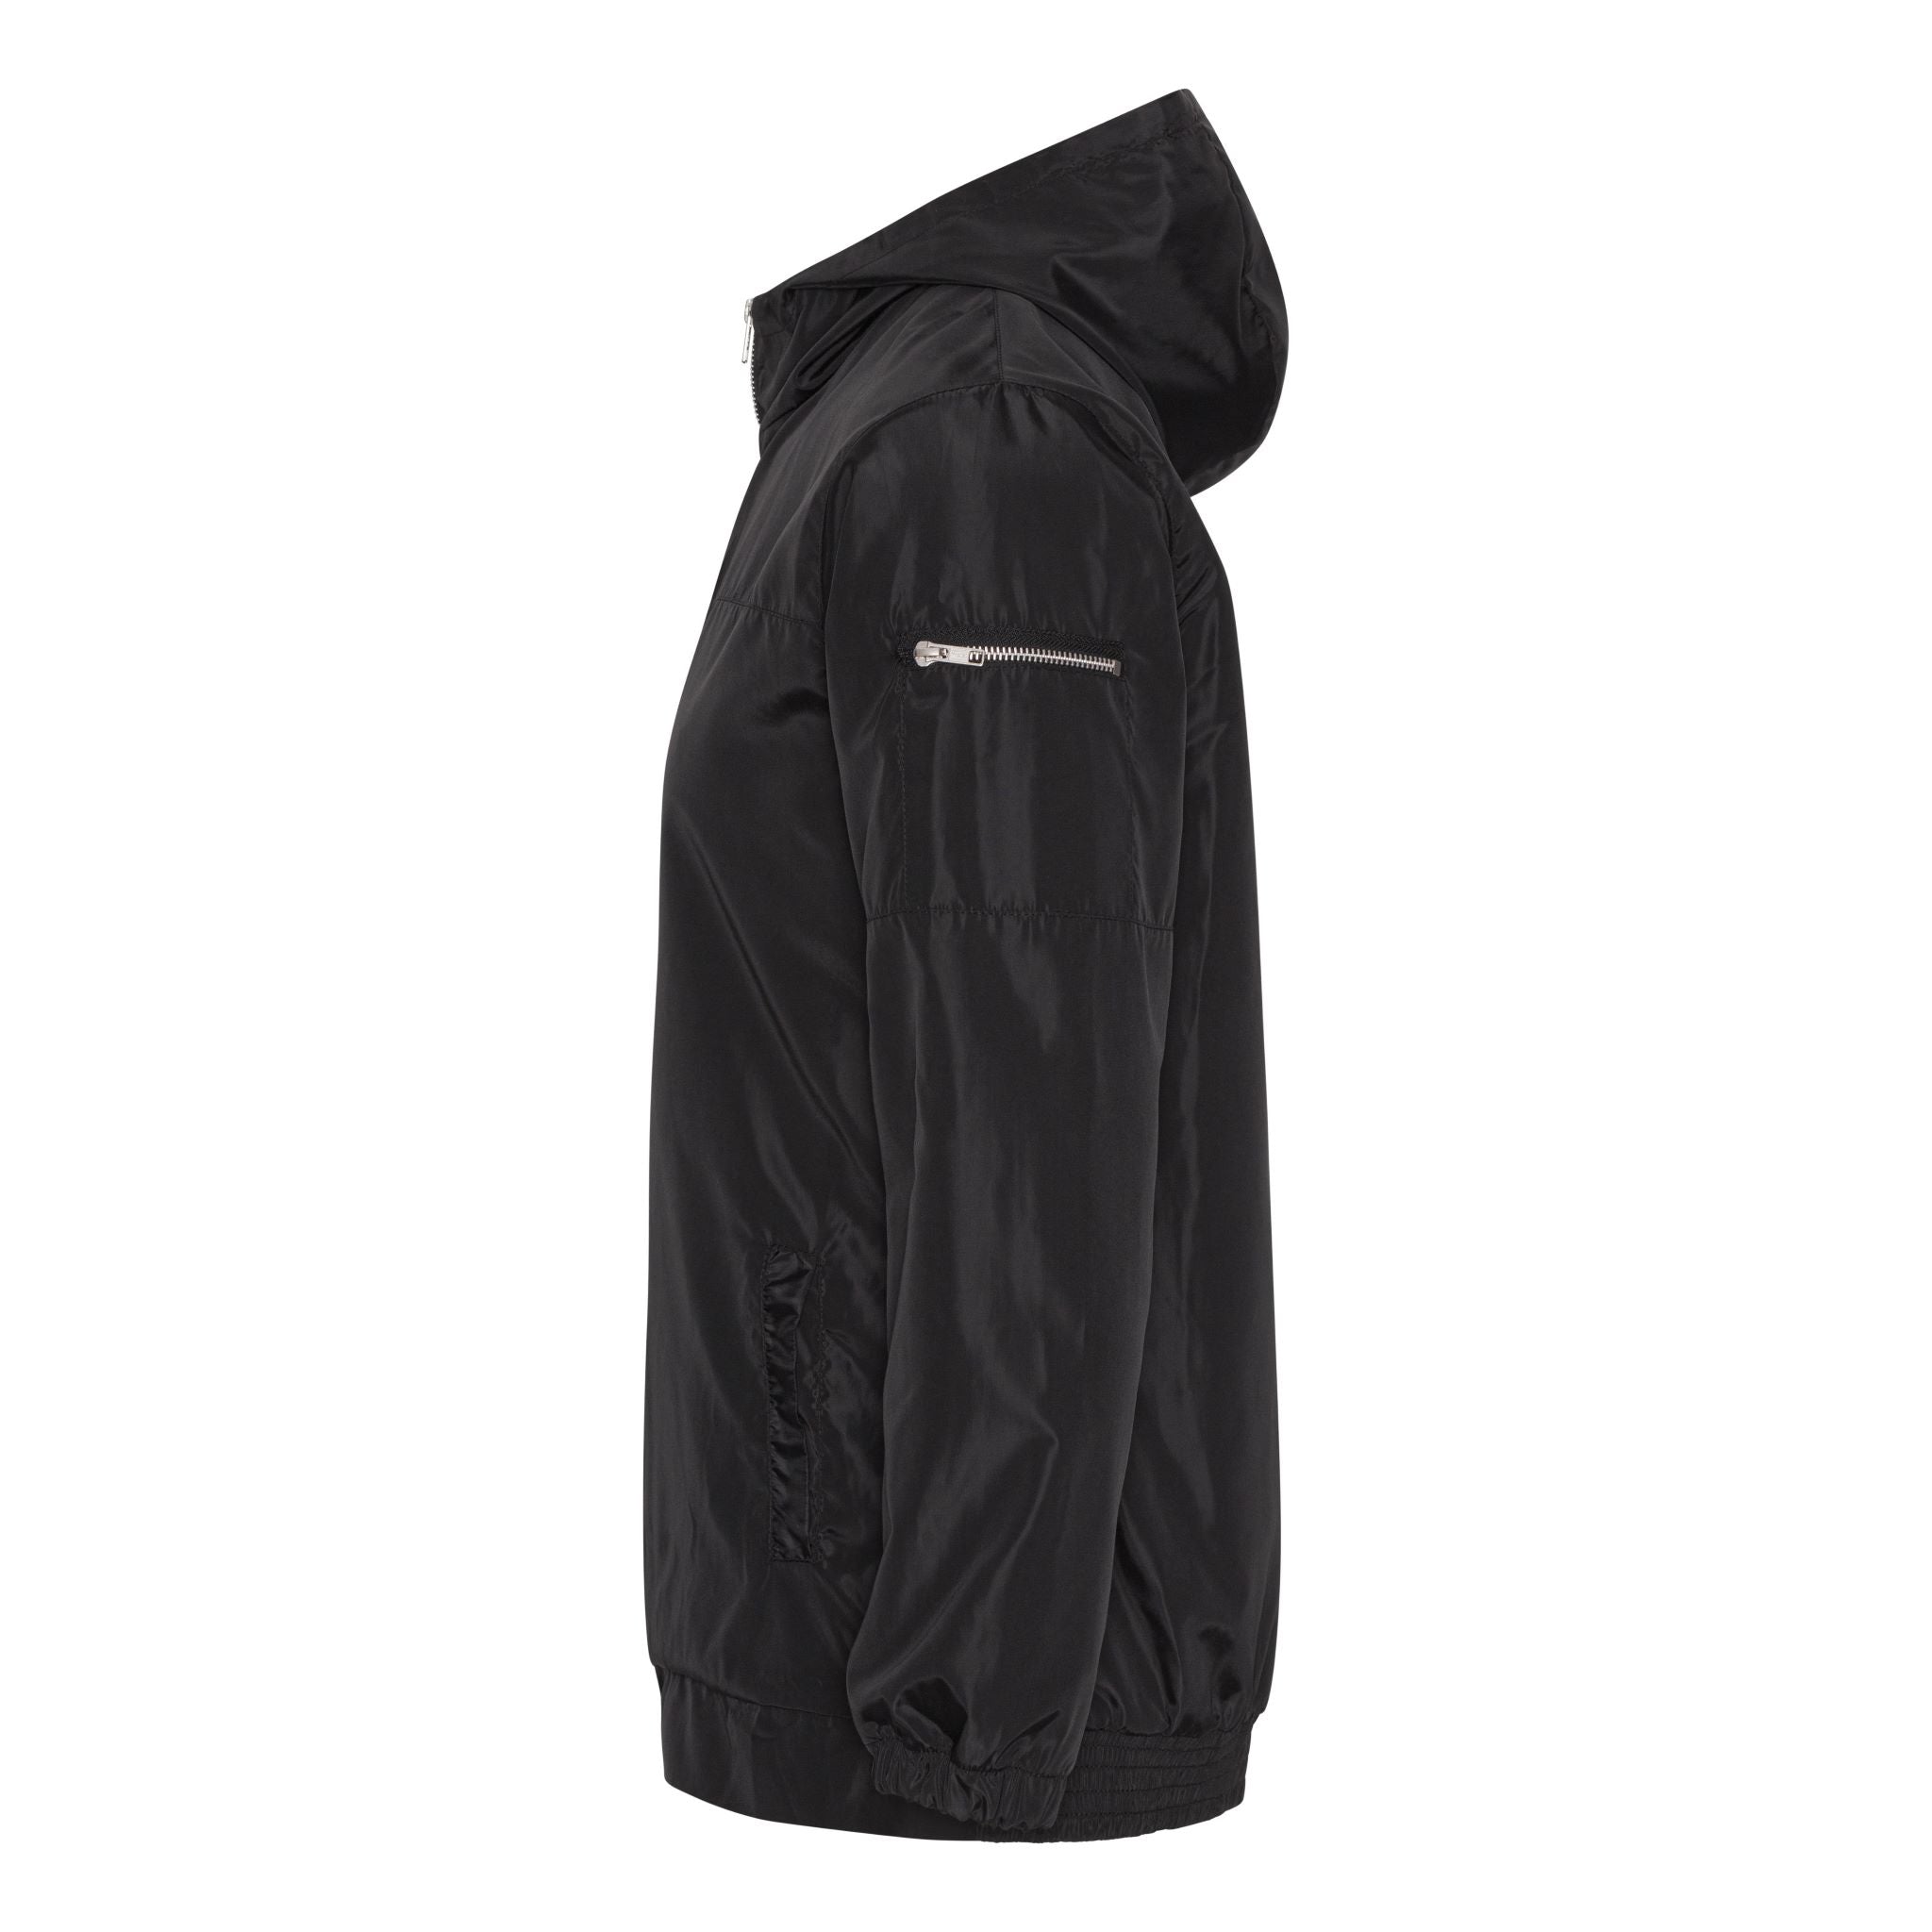 Waterproof black jacket